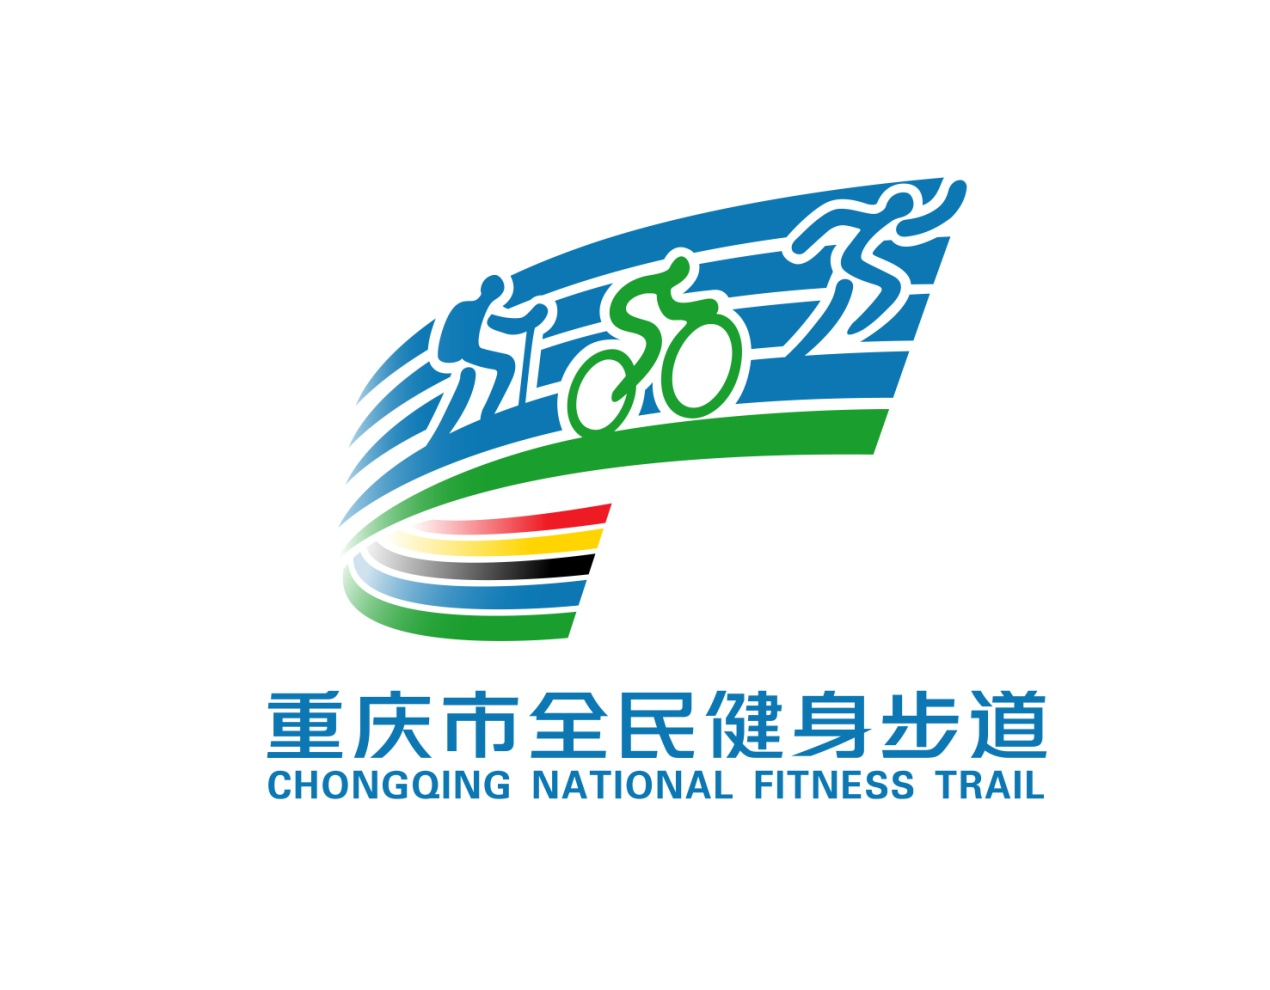 市体育局发布重庆市体育公园和全民健身步道logo